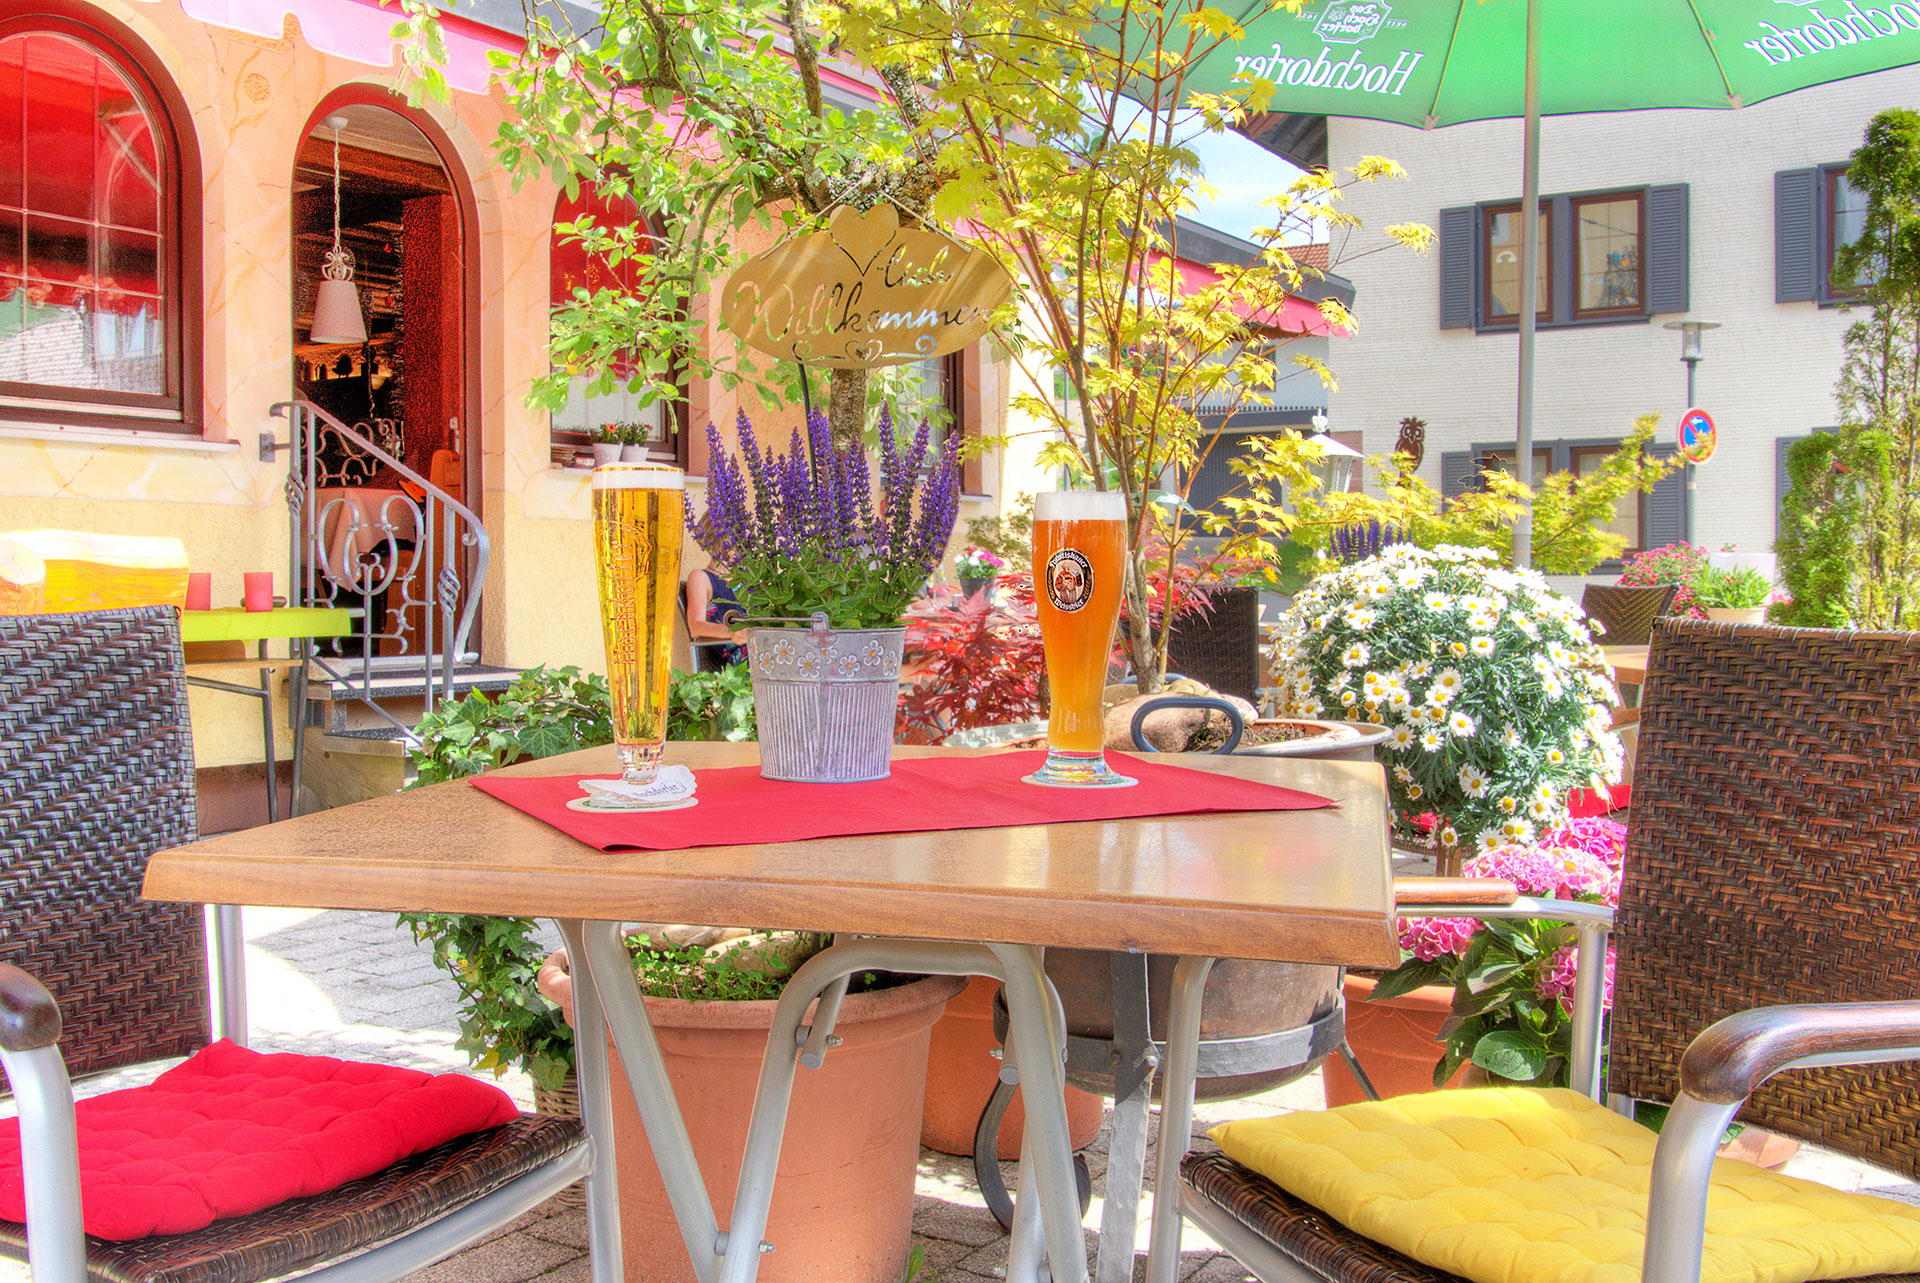 hotelfoto biergarten mit weiterem blick auf tisch mit zwei frisch gezapten bieren sowie lavendeltoepfchen